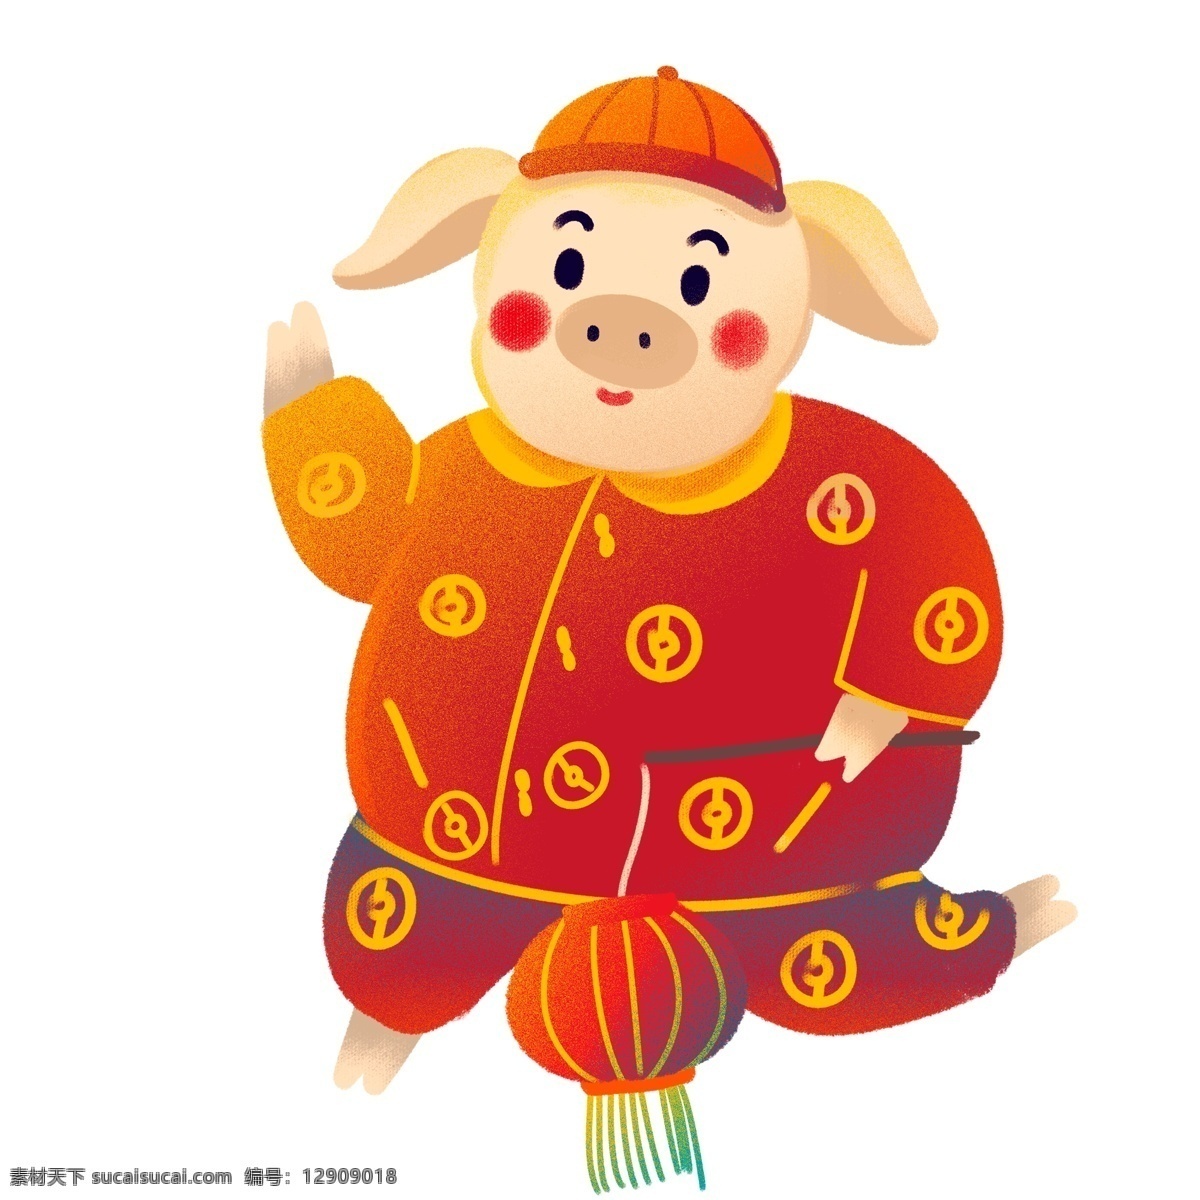 过年 提 灯笼 的卡 通 喜庆 小 猪 中国风 春节 插画 唐装 小猪 卡通 新年 猪年 2019年 小猪形象 猪年形象